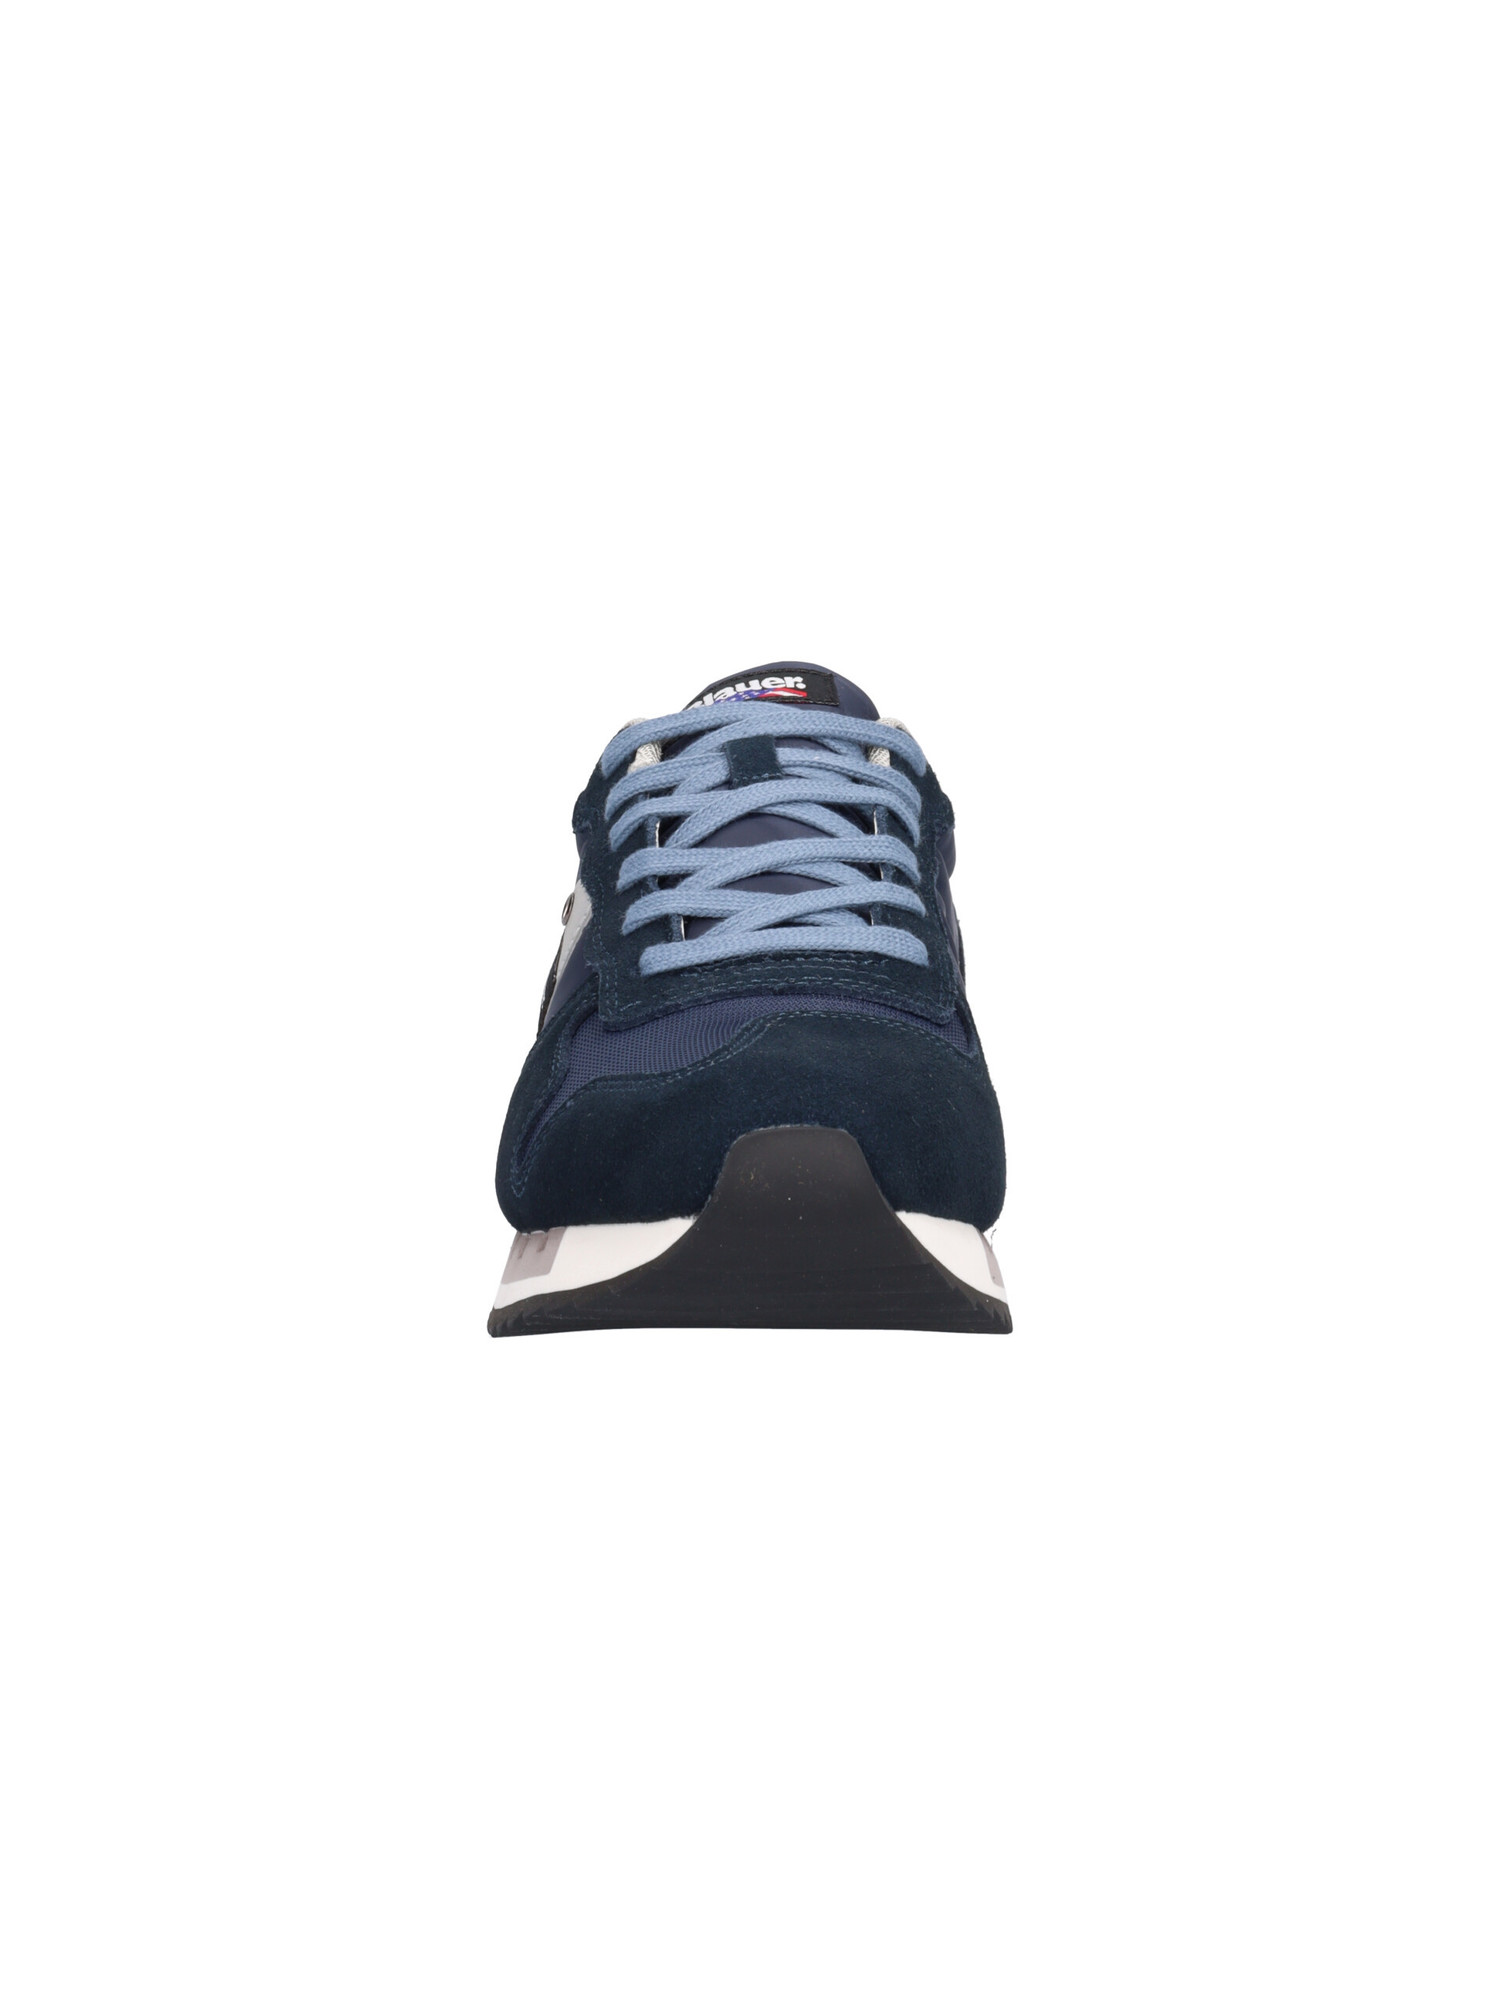 sneaker-blauer-da-uomo-blu-472df6